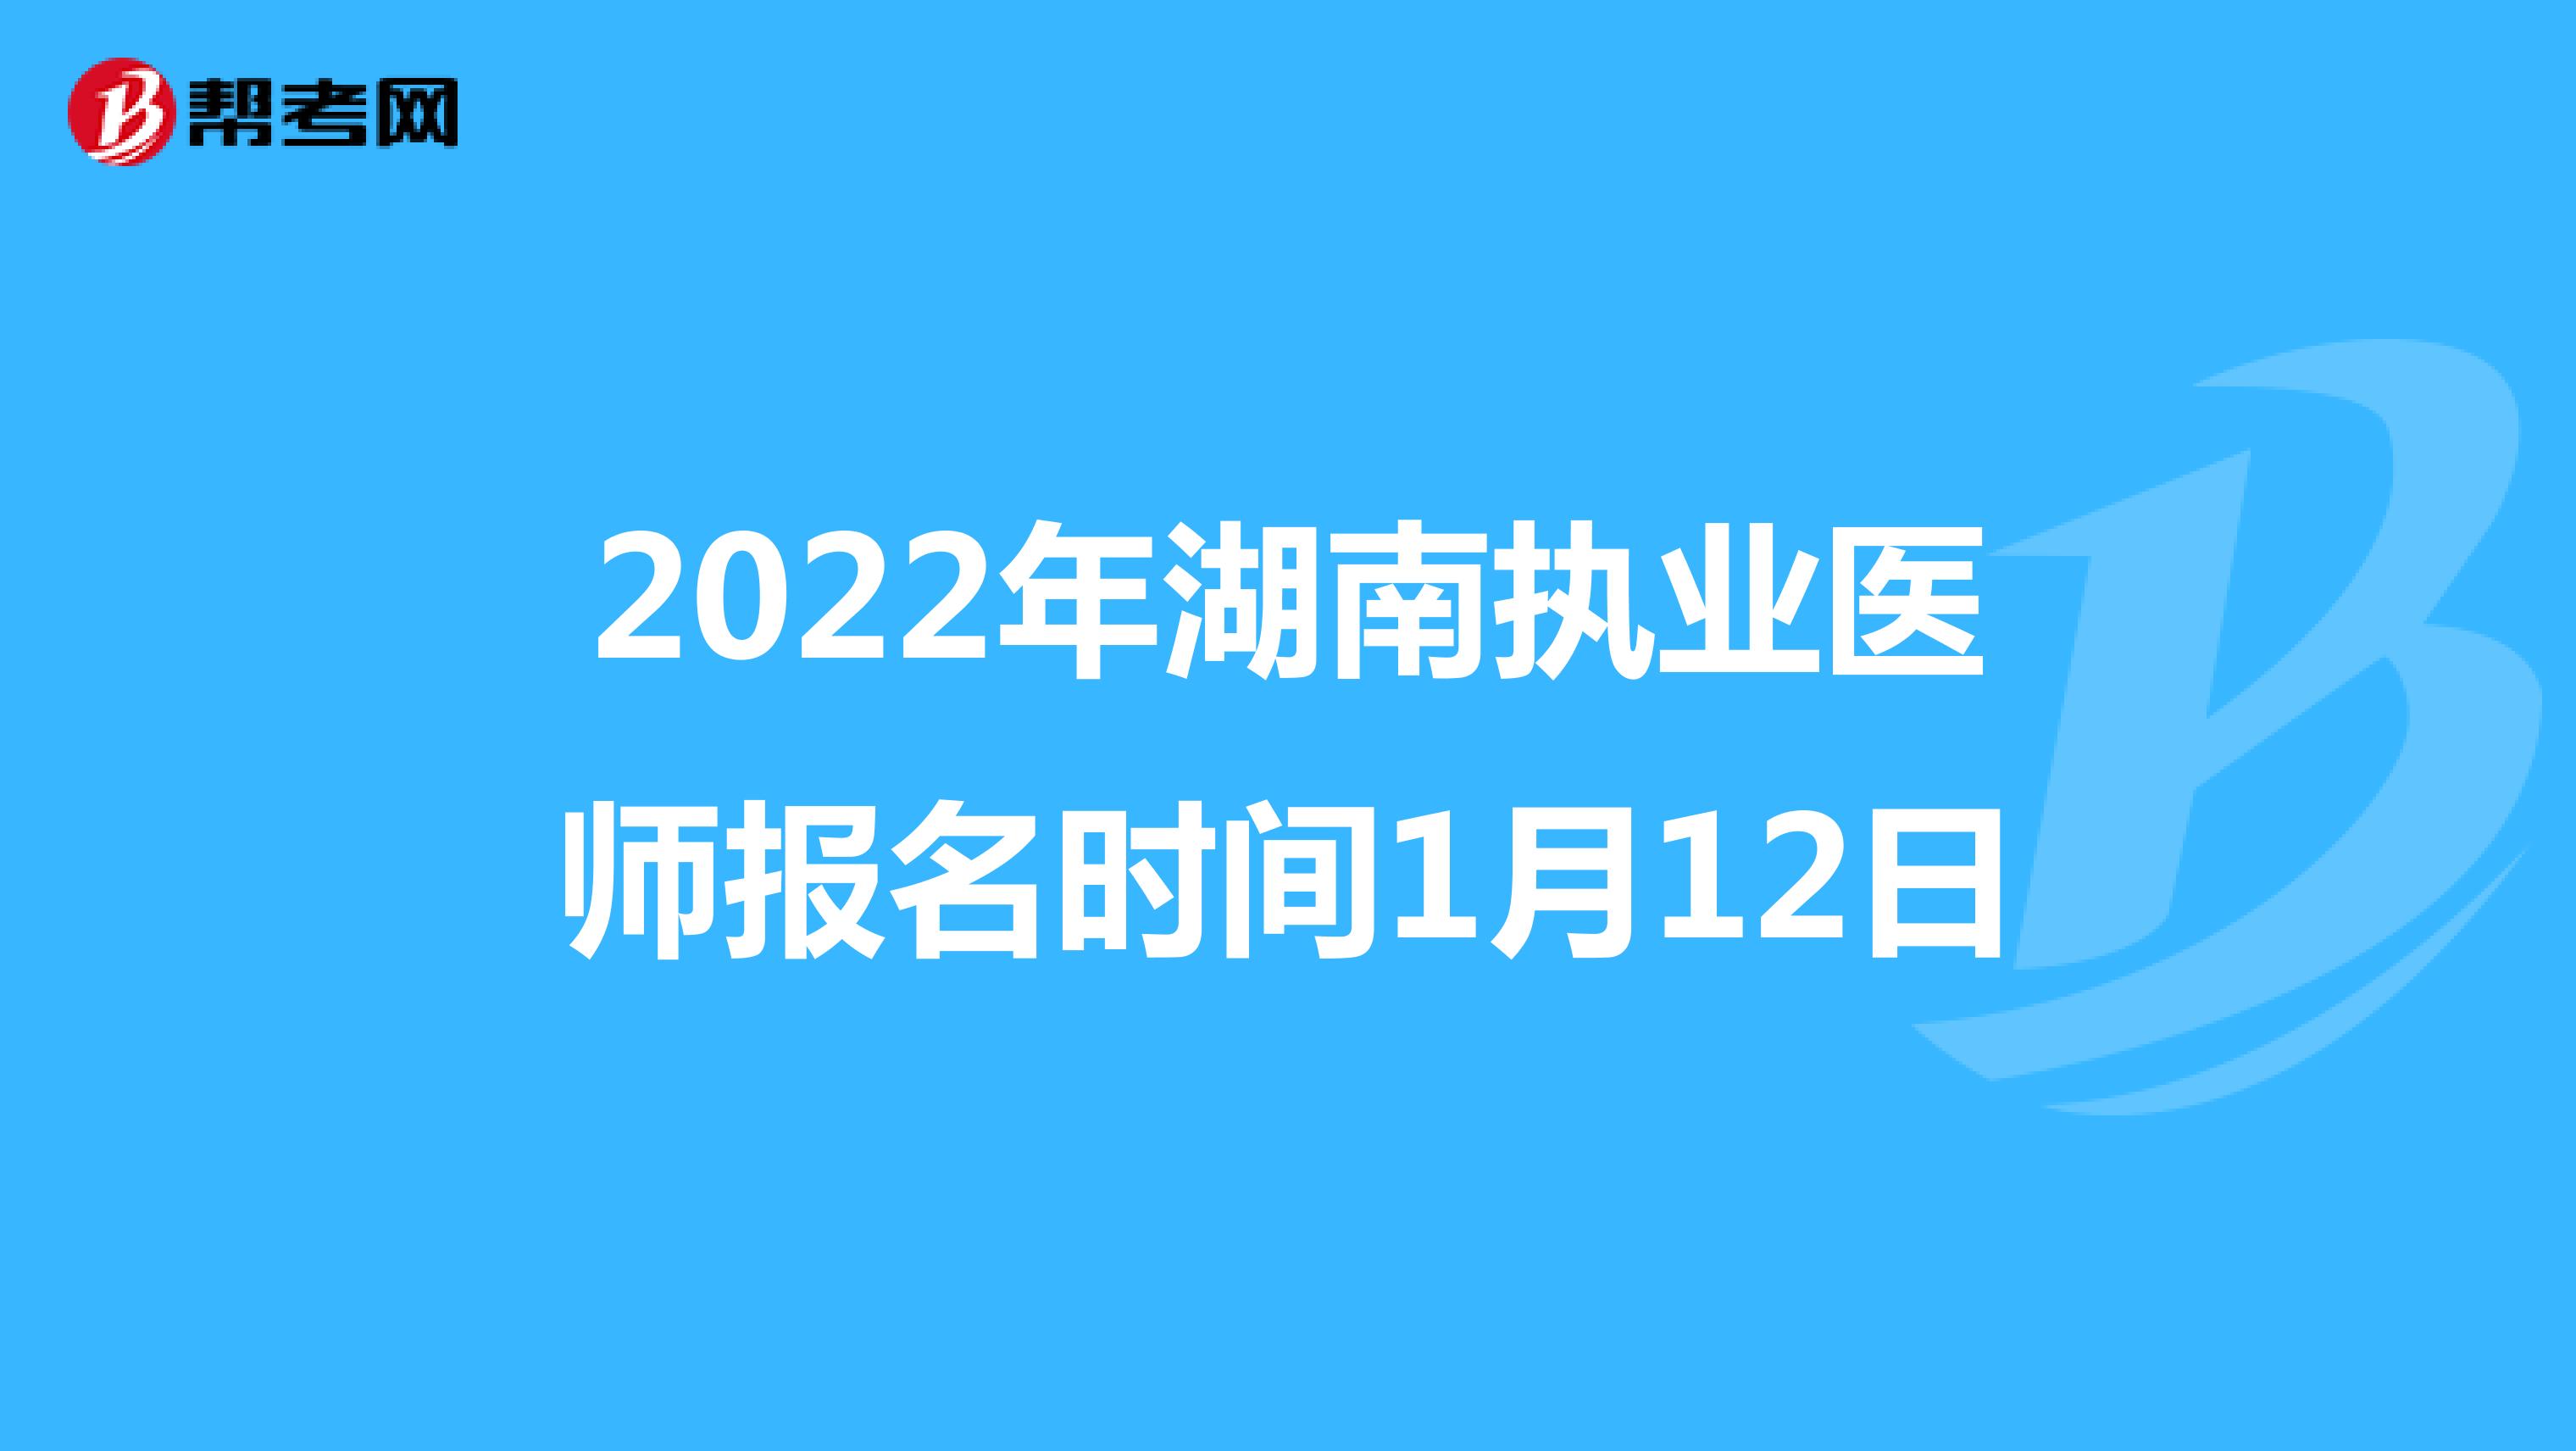 2022年湖南执业医师报名时间1月12日